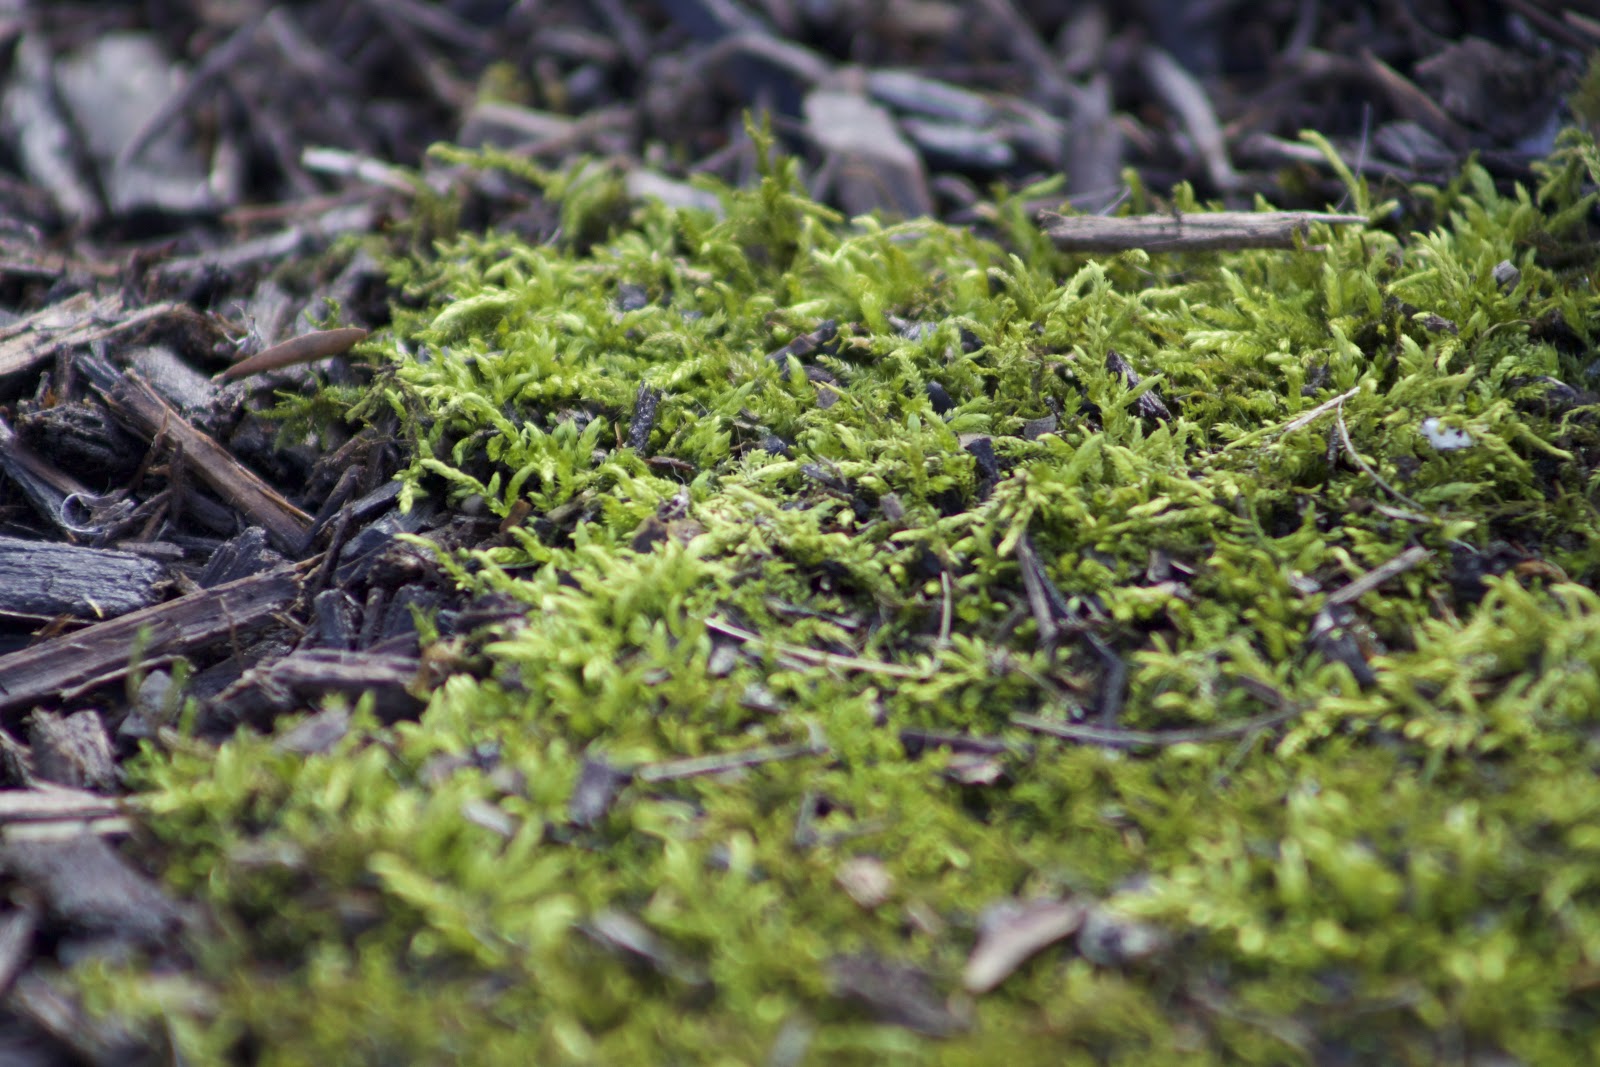 mat of Thuidium fern moss